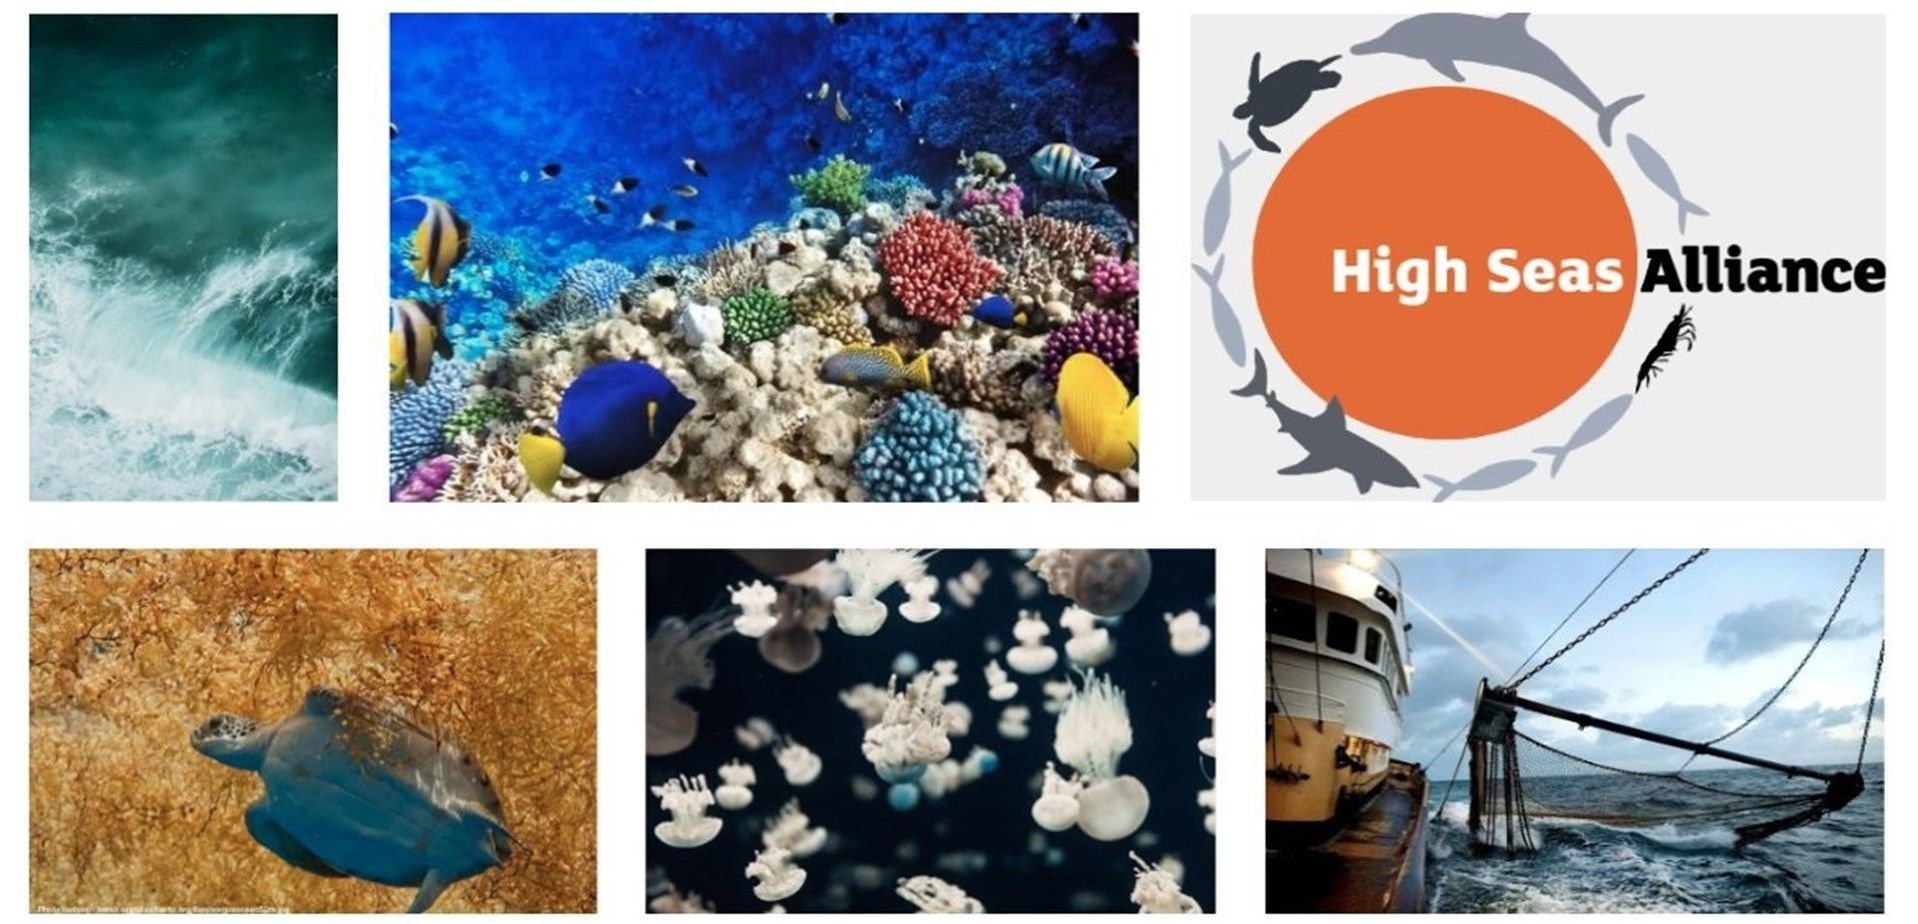 Distintos ecosistemas marinos amenazados por la actividad humana / Foto: High Seas Alliance